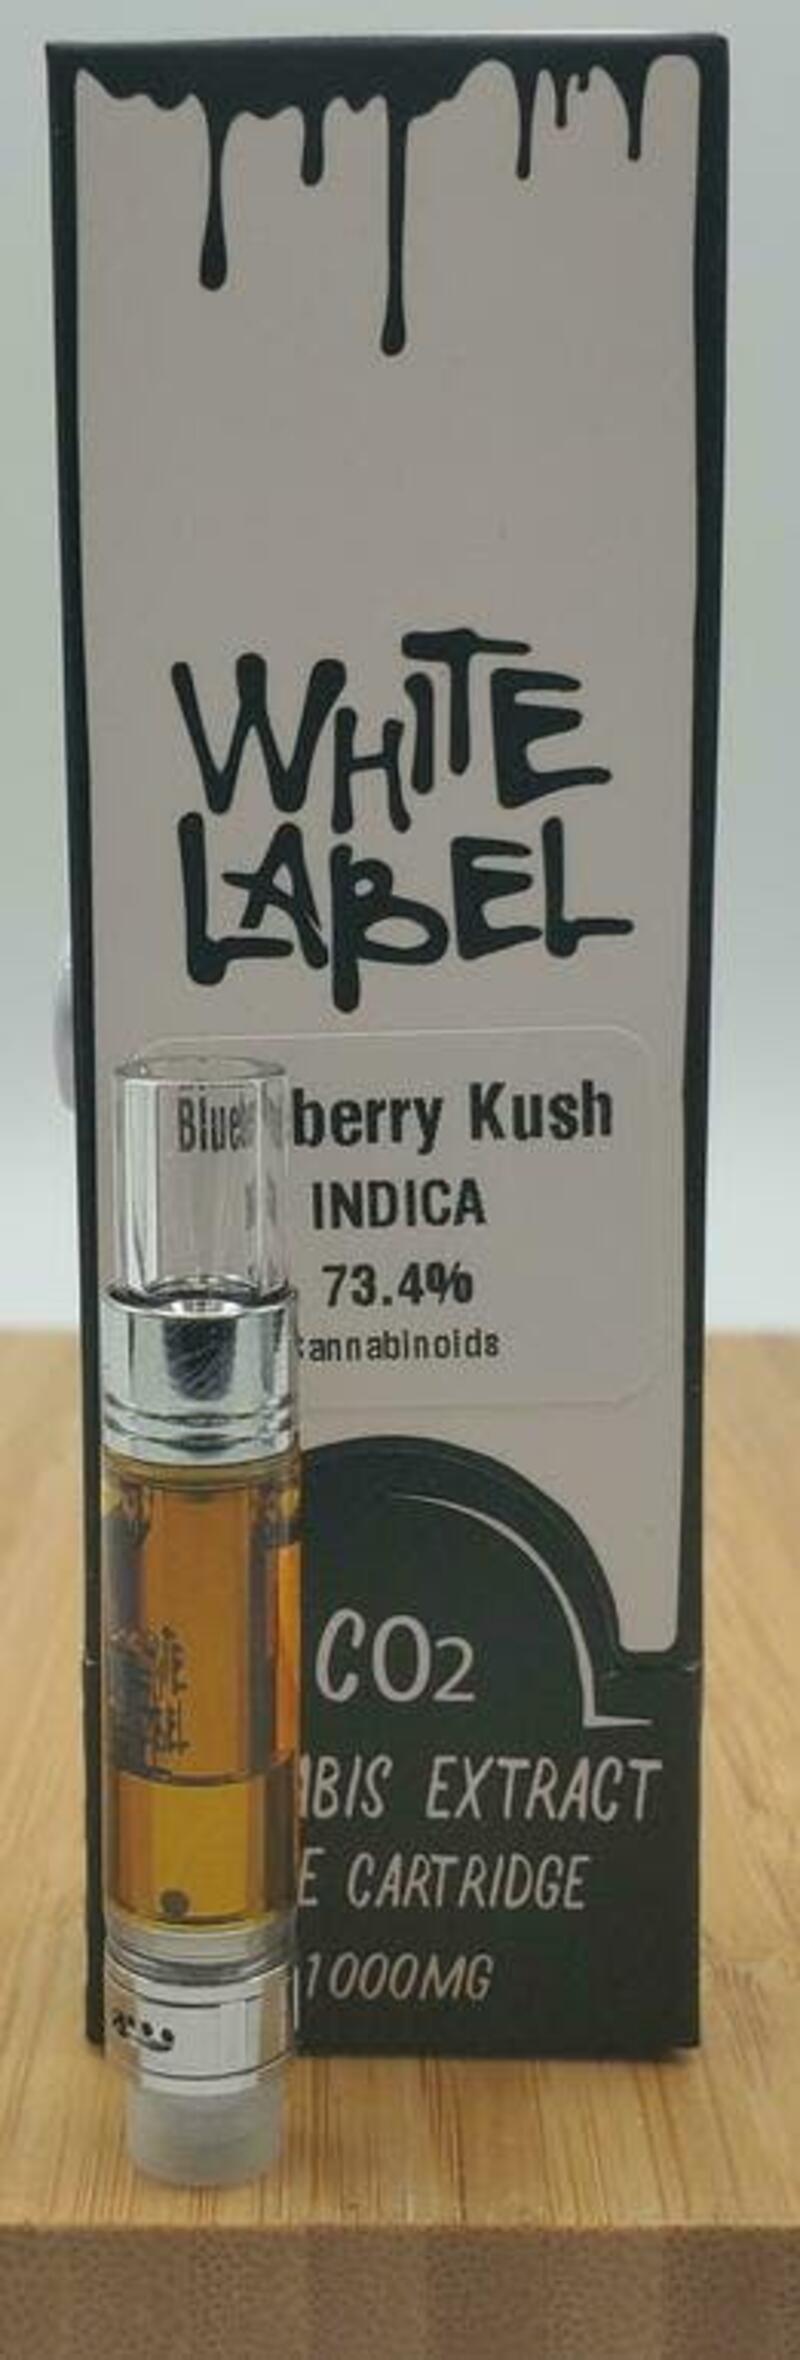 Blueberry Kush 1g White Label Cart